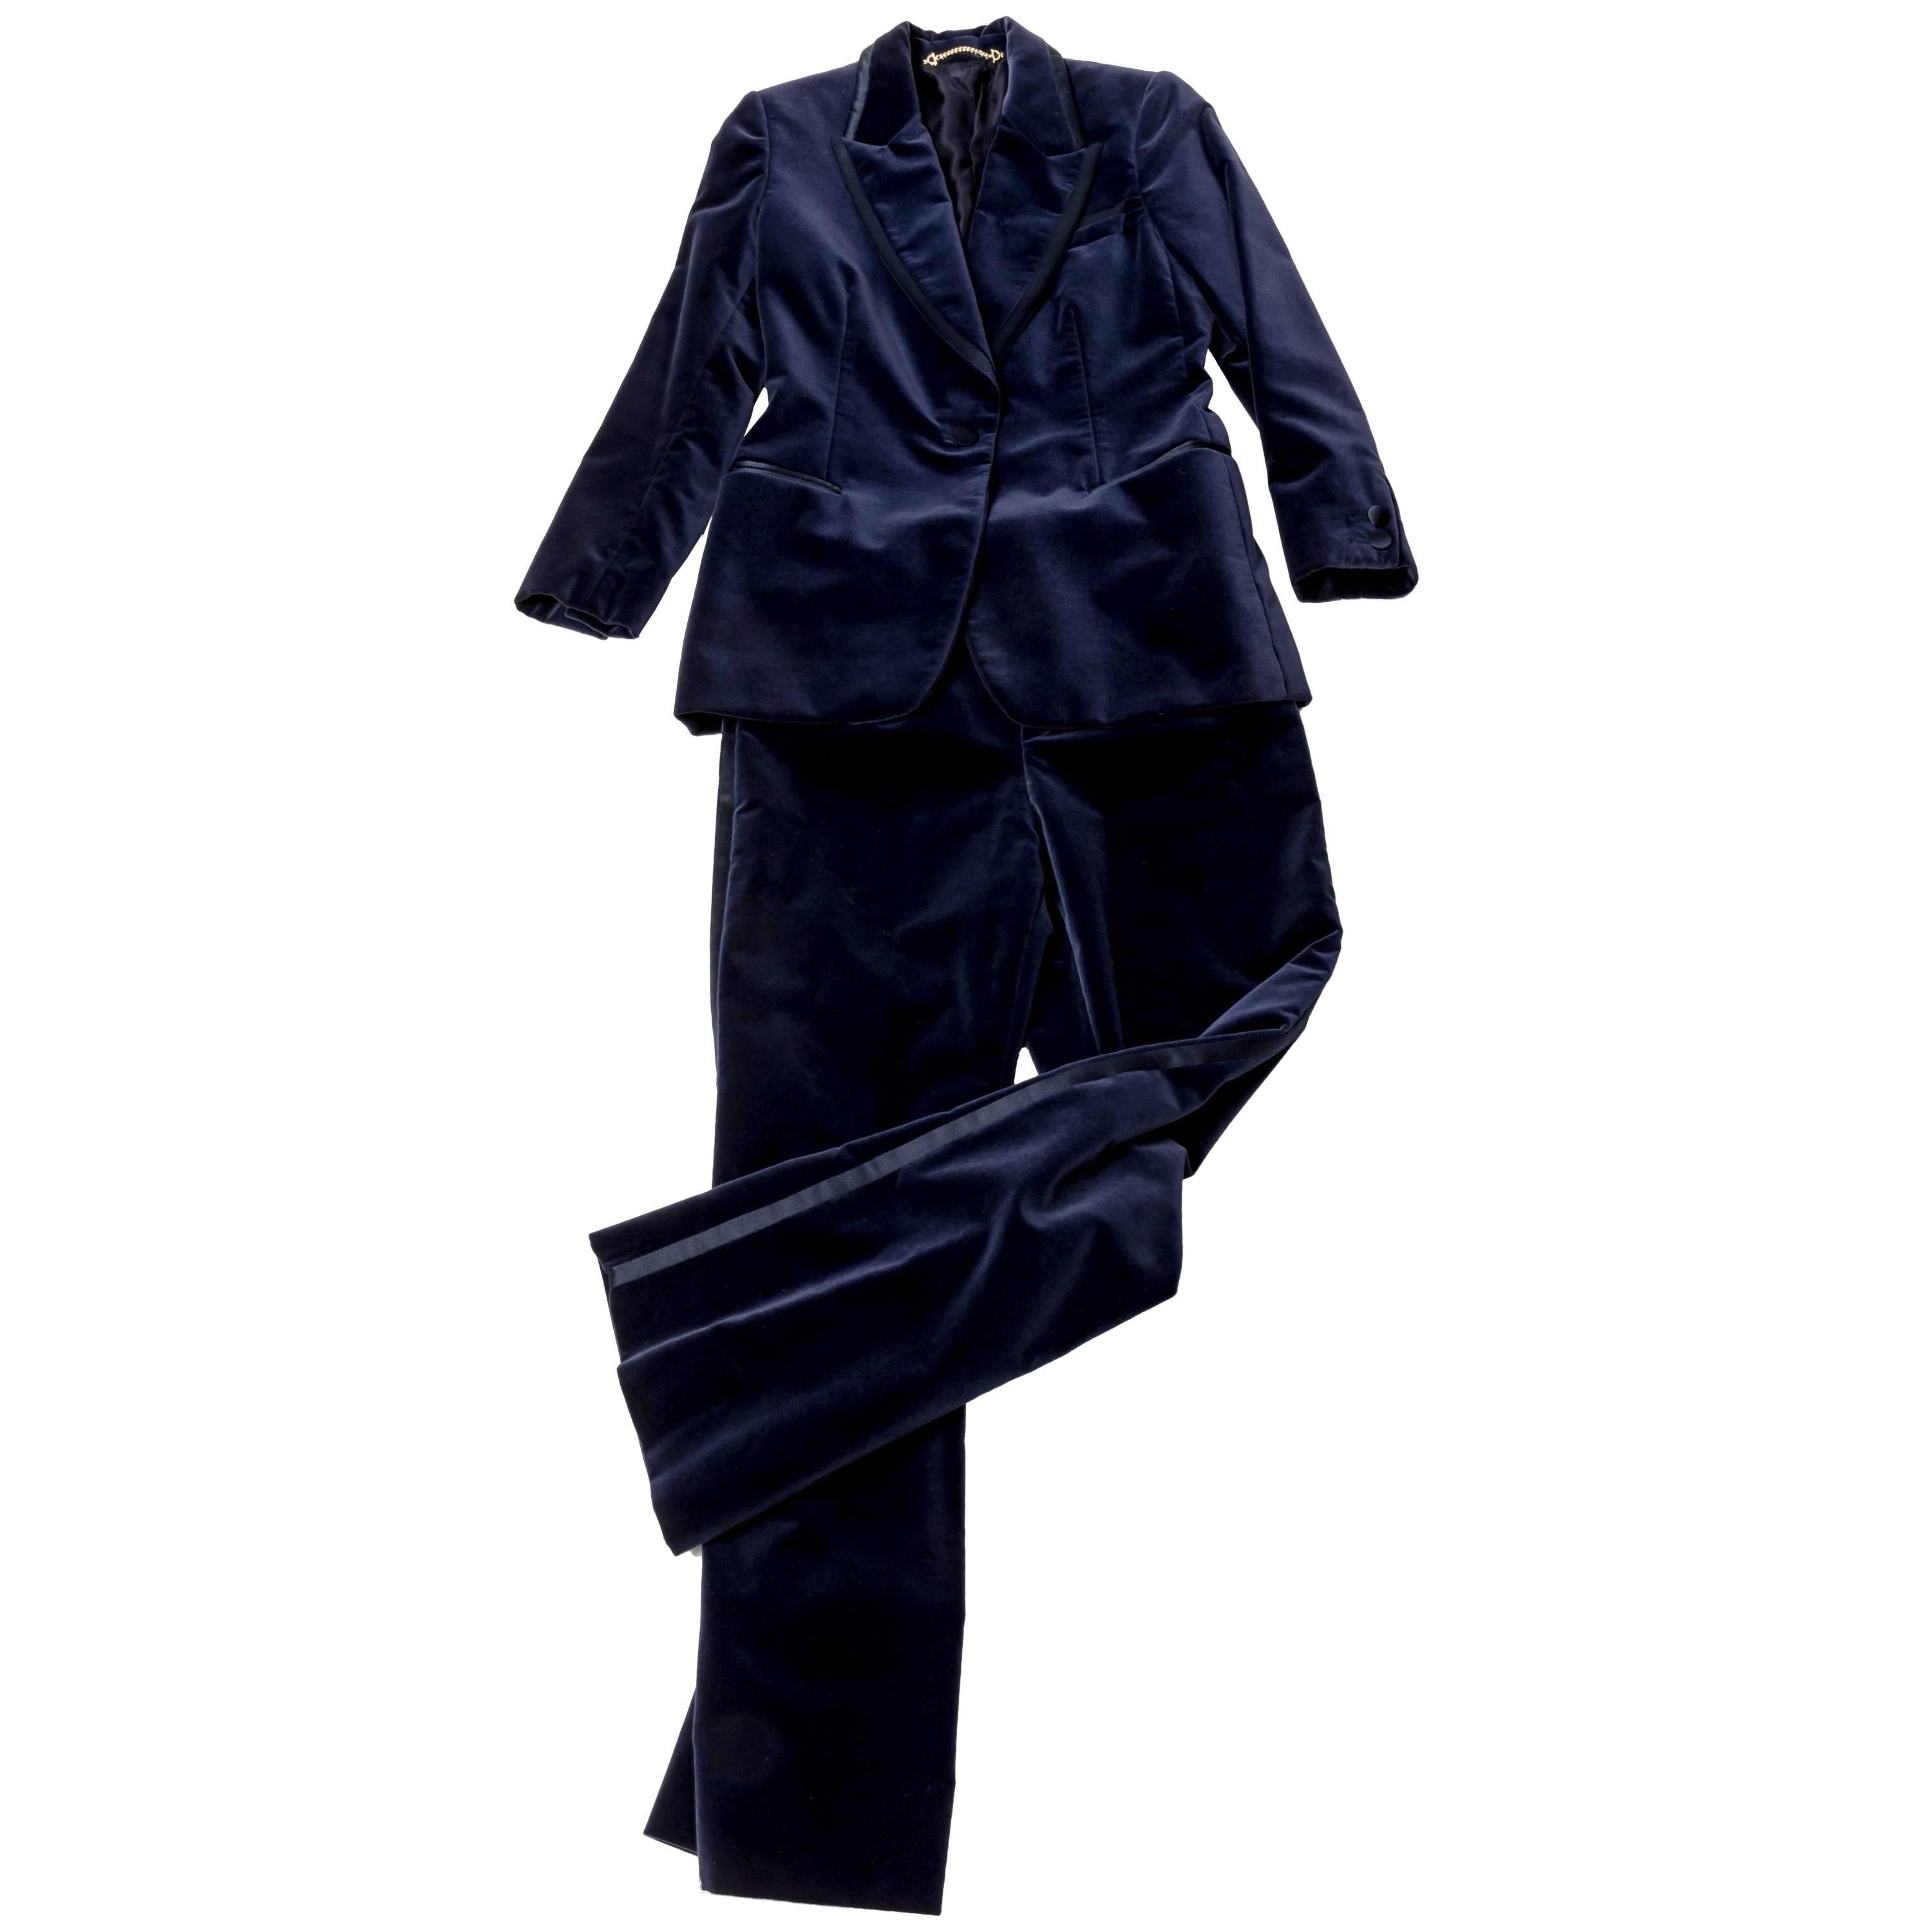 Tom Ford for Gucci Blue Velvet Tuxedo - Size 40